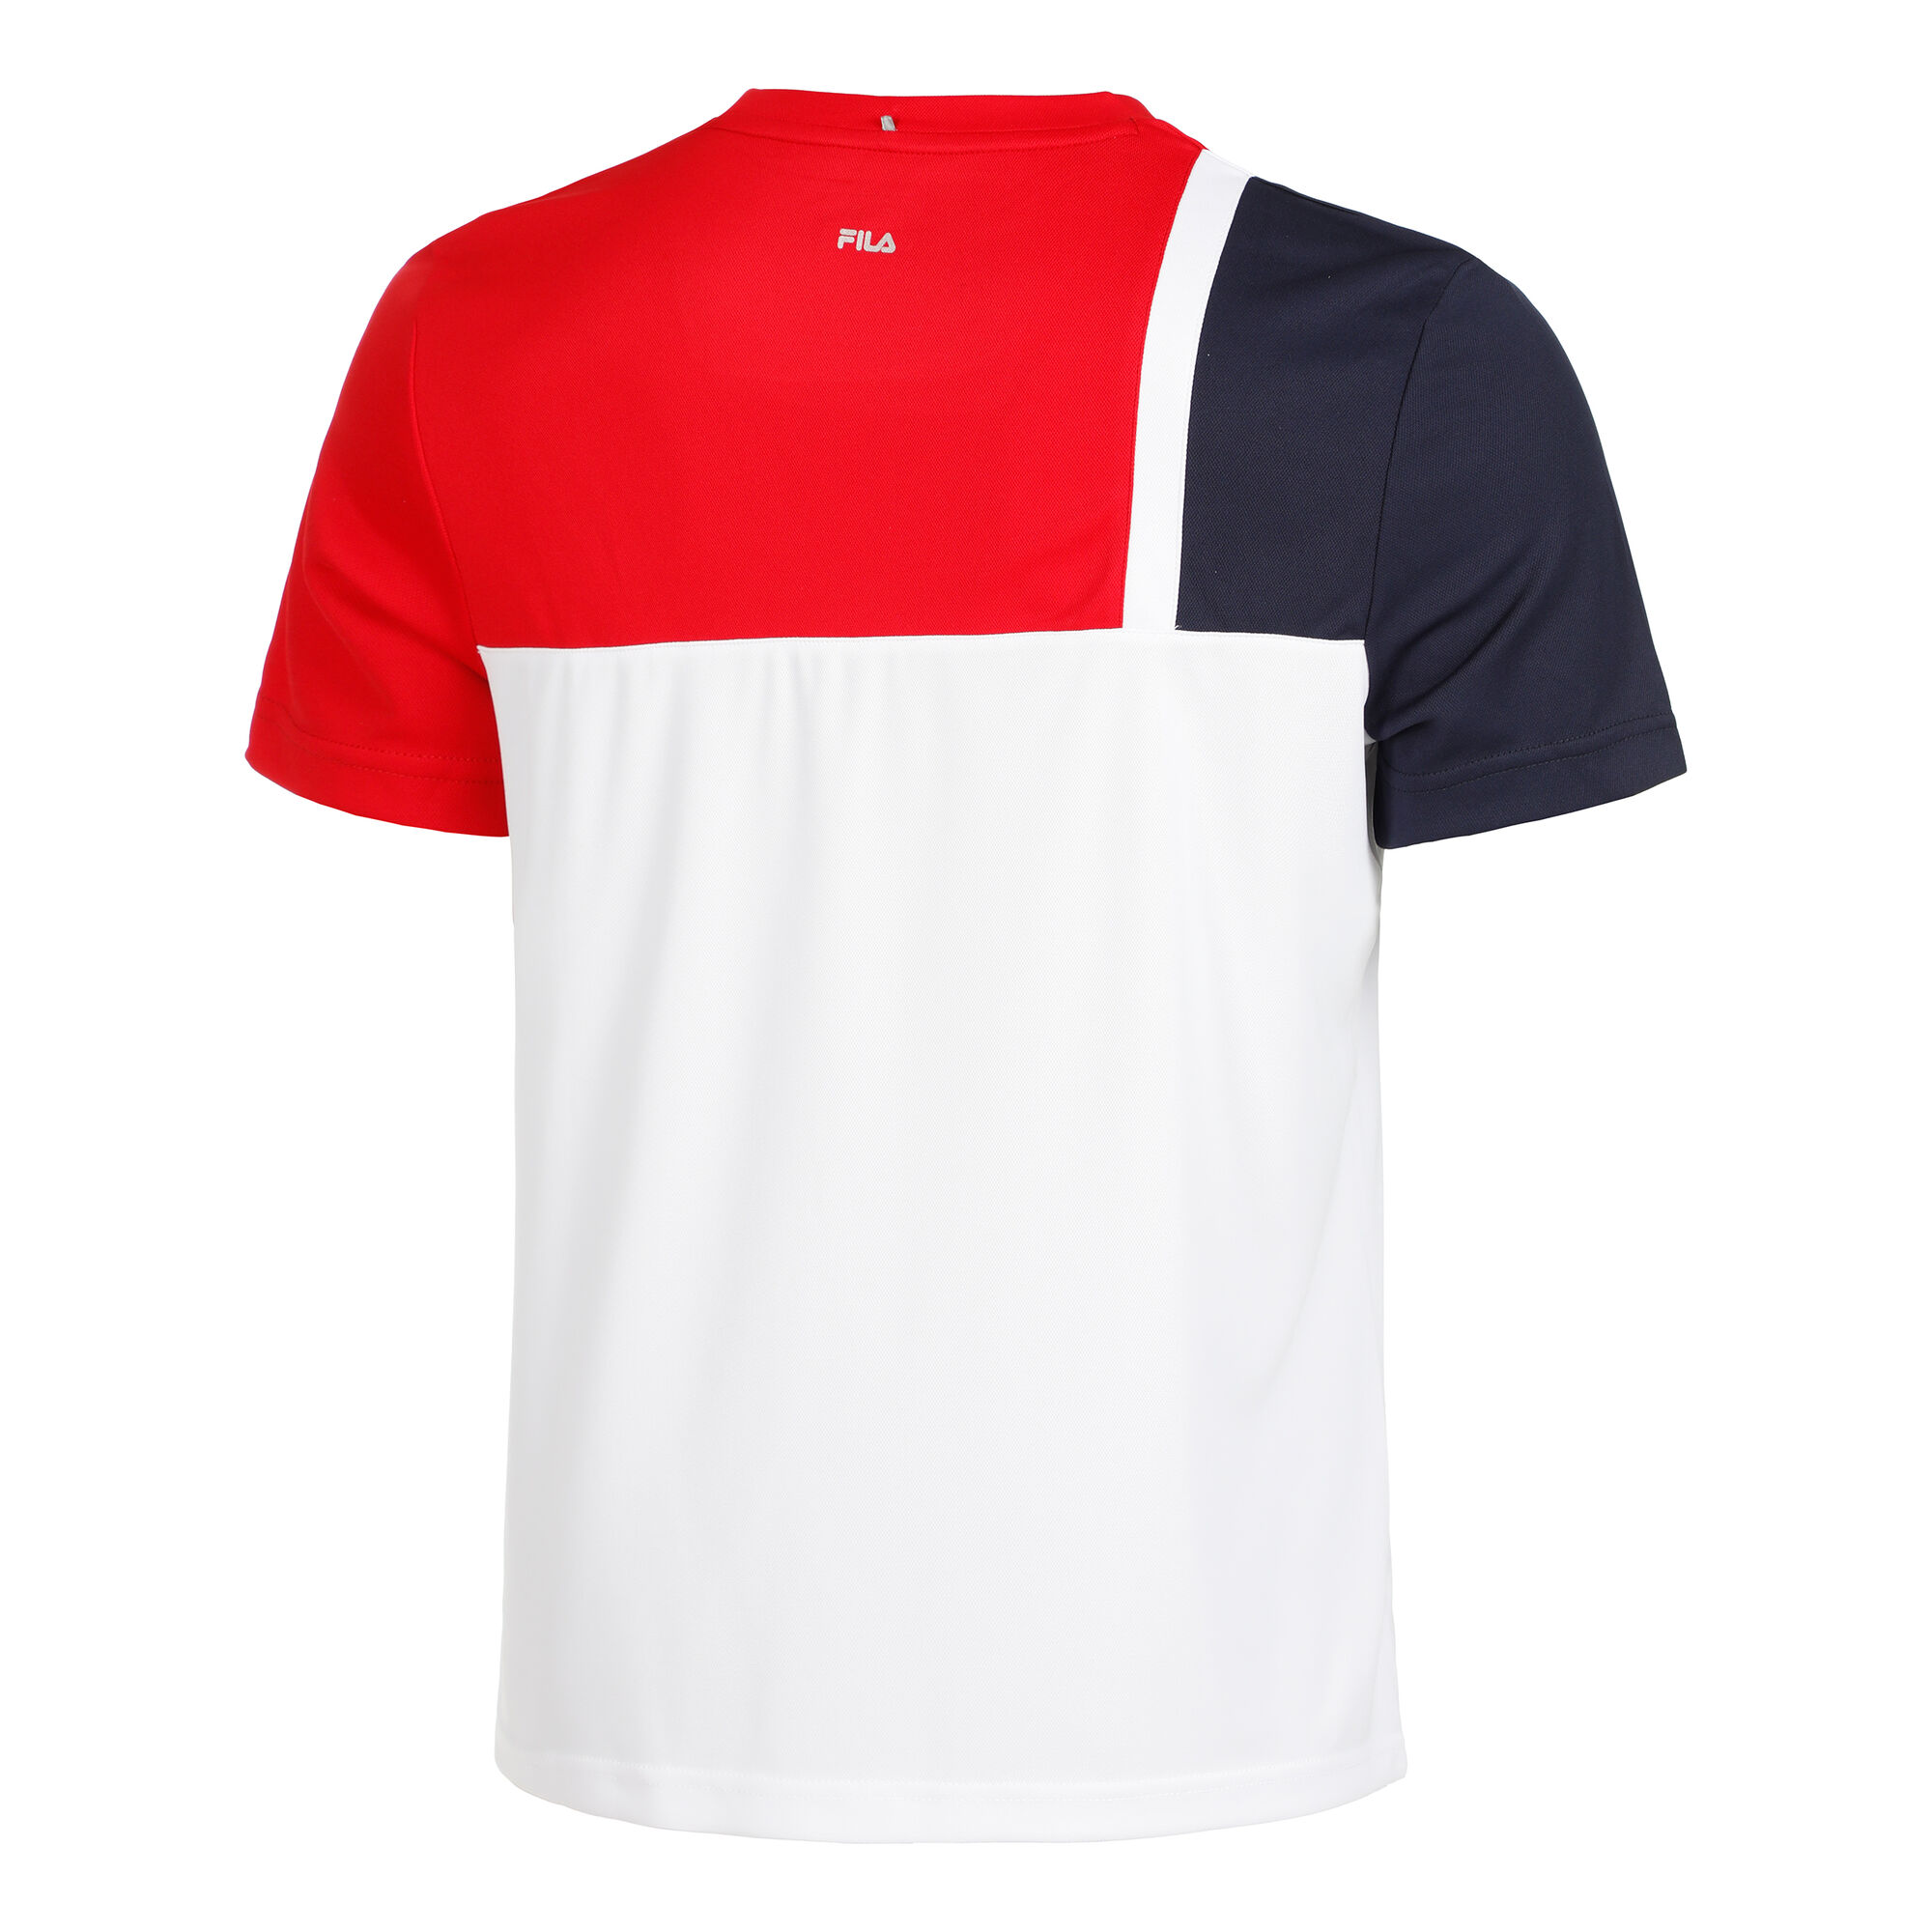 Overeenkomend uitvoeren Vleugels Fila Karl T-shirt Heren - Rood, Donkerblauw online kopen | Tennis-Point